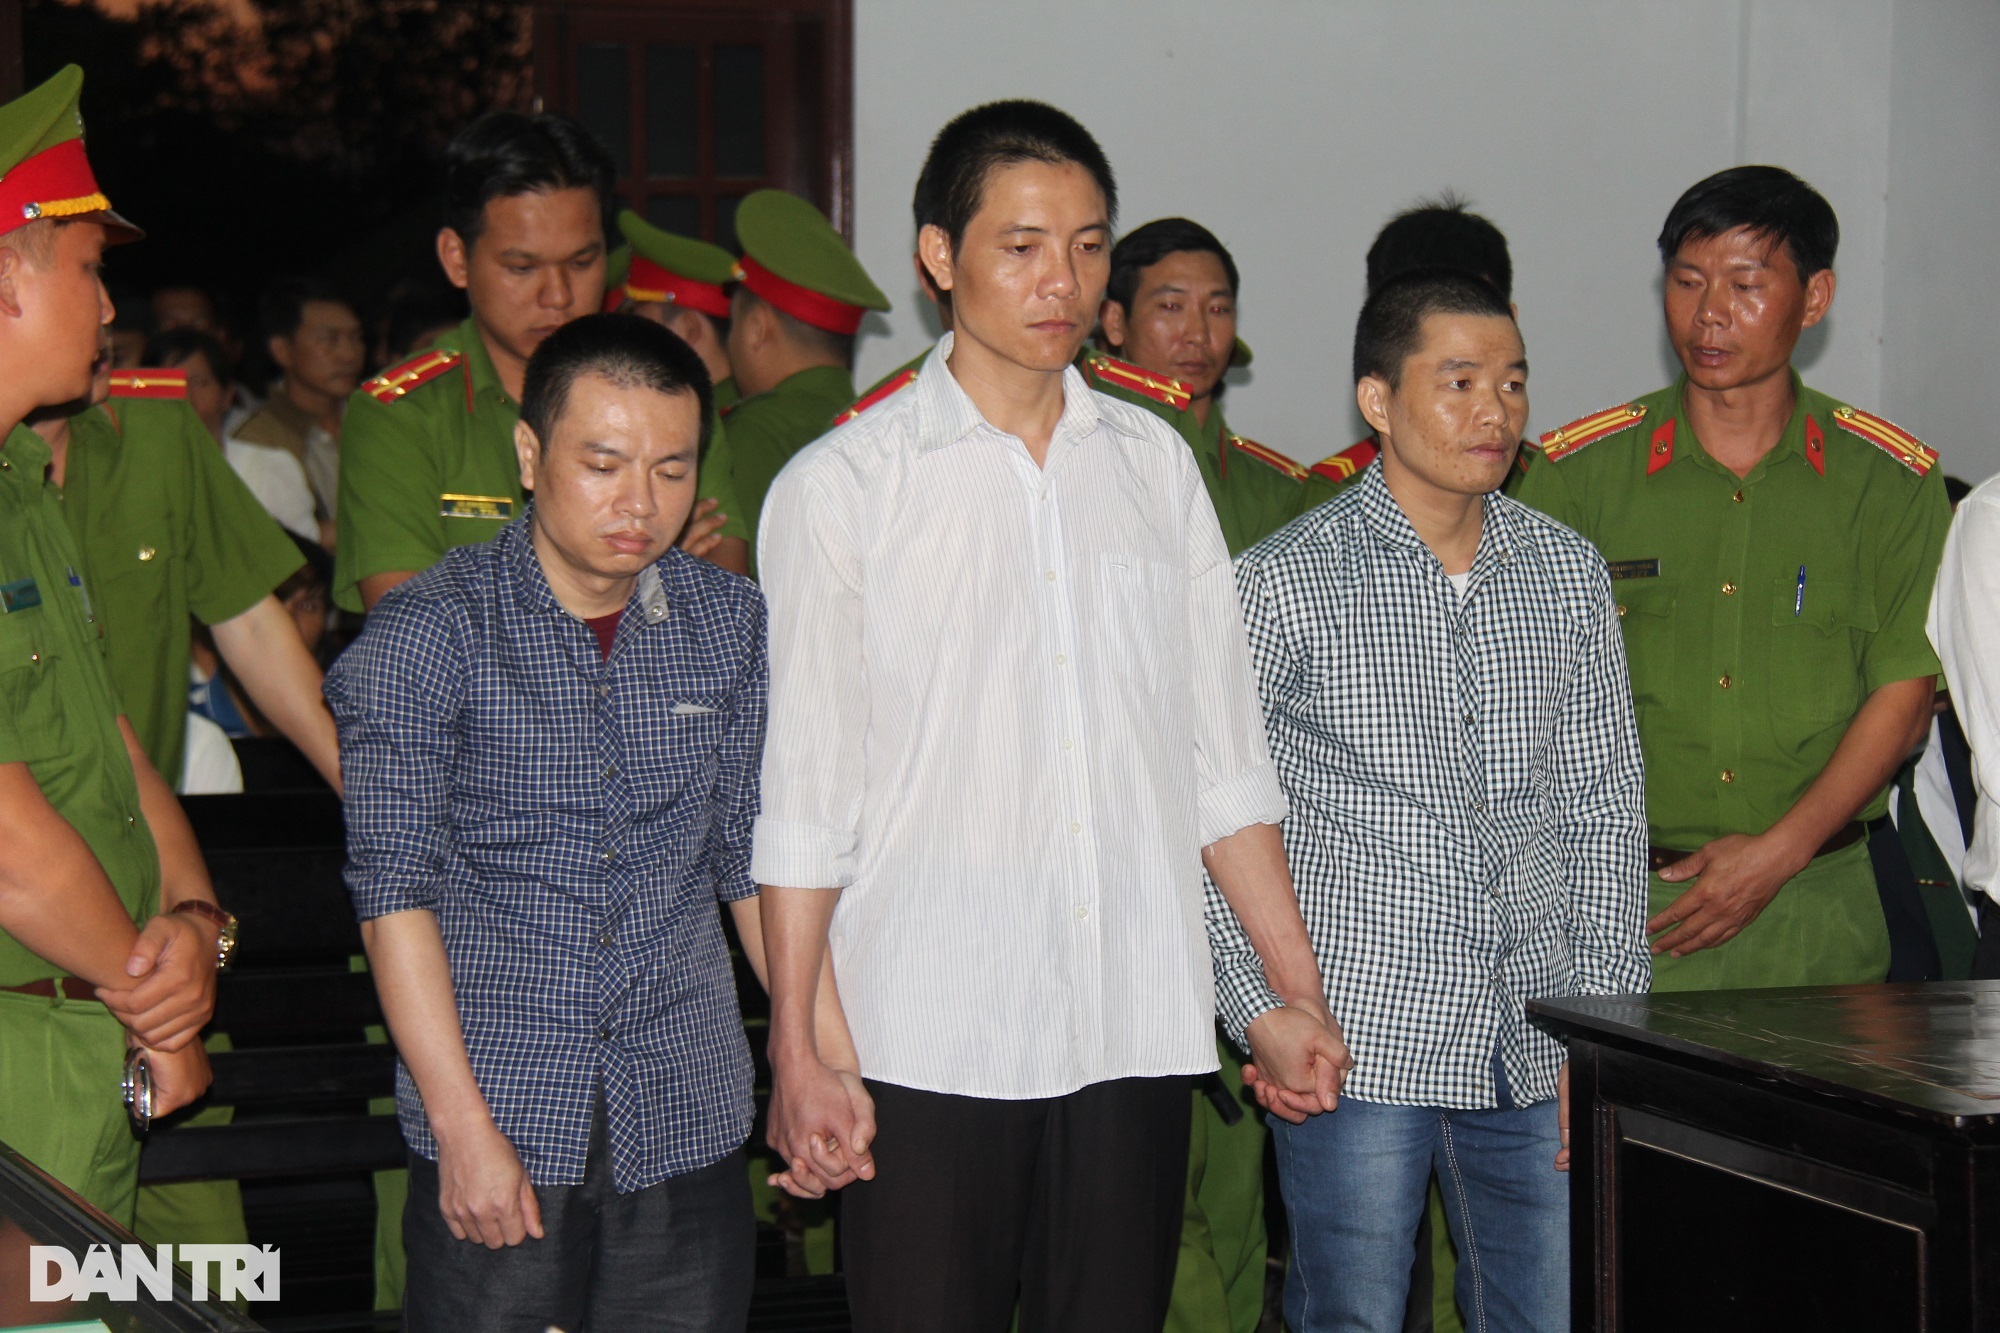 Tử tù Đặng Văn Hiến được Chủ tịch nước ân giảm xuống án chung thân - 1